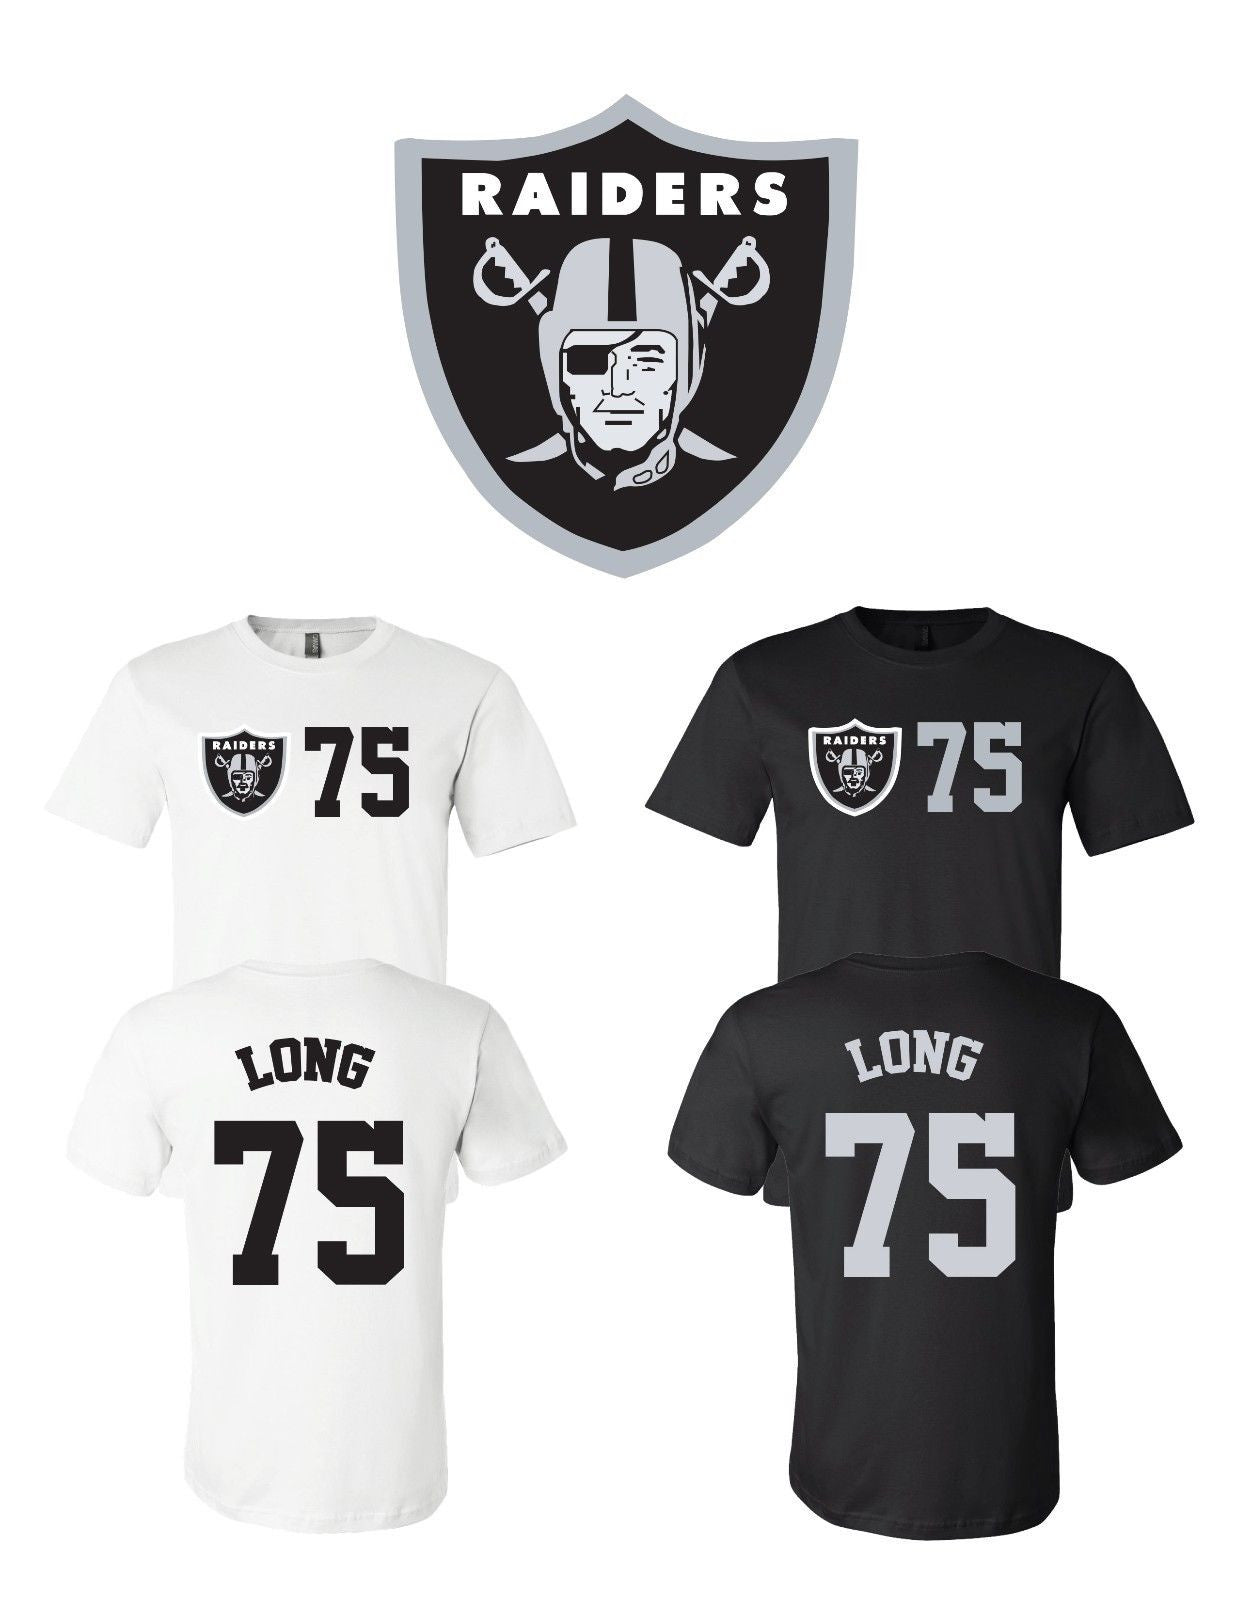 Howie Long #75 Las Vegas Oakland Raiders Jersey player shirt